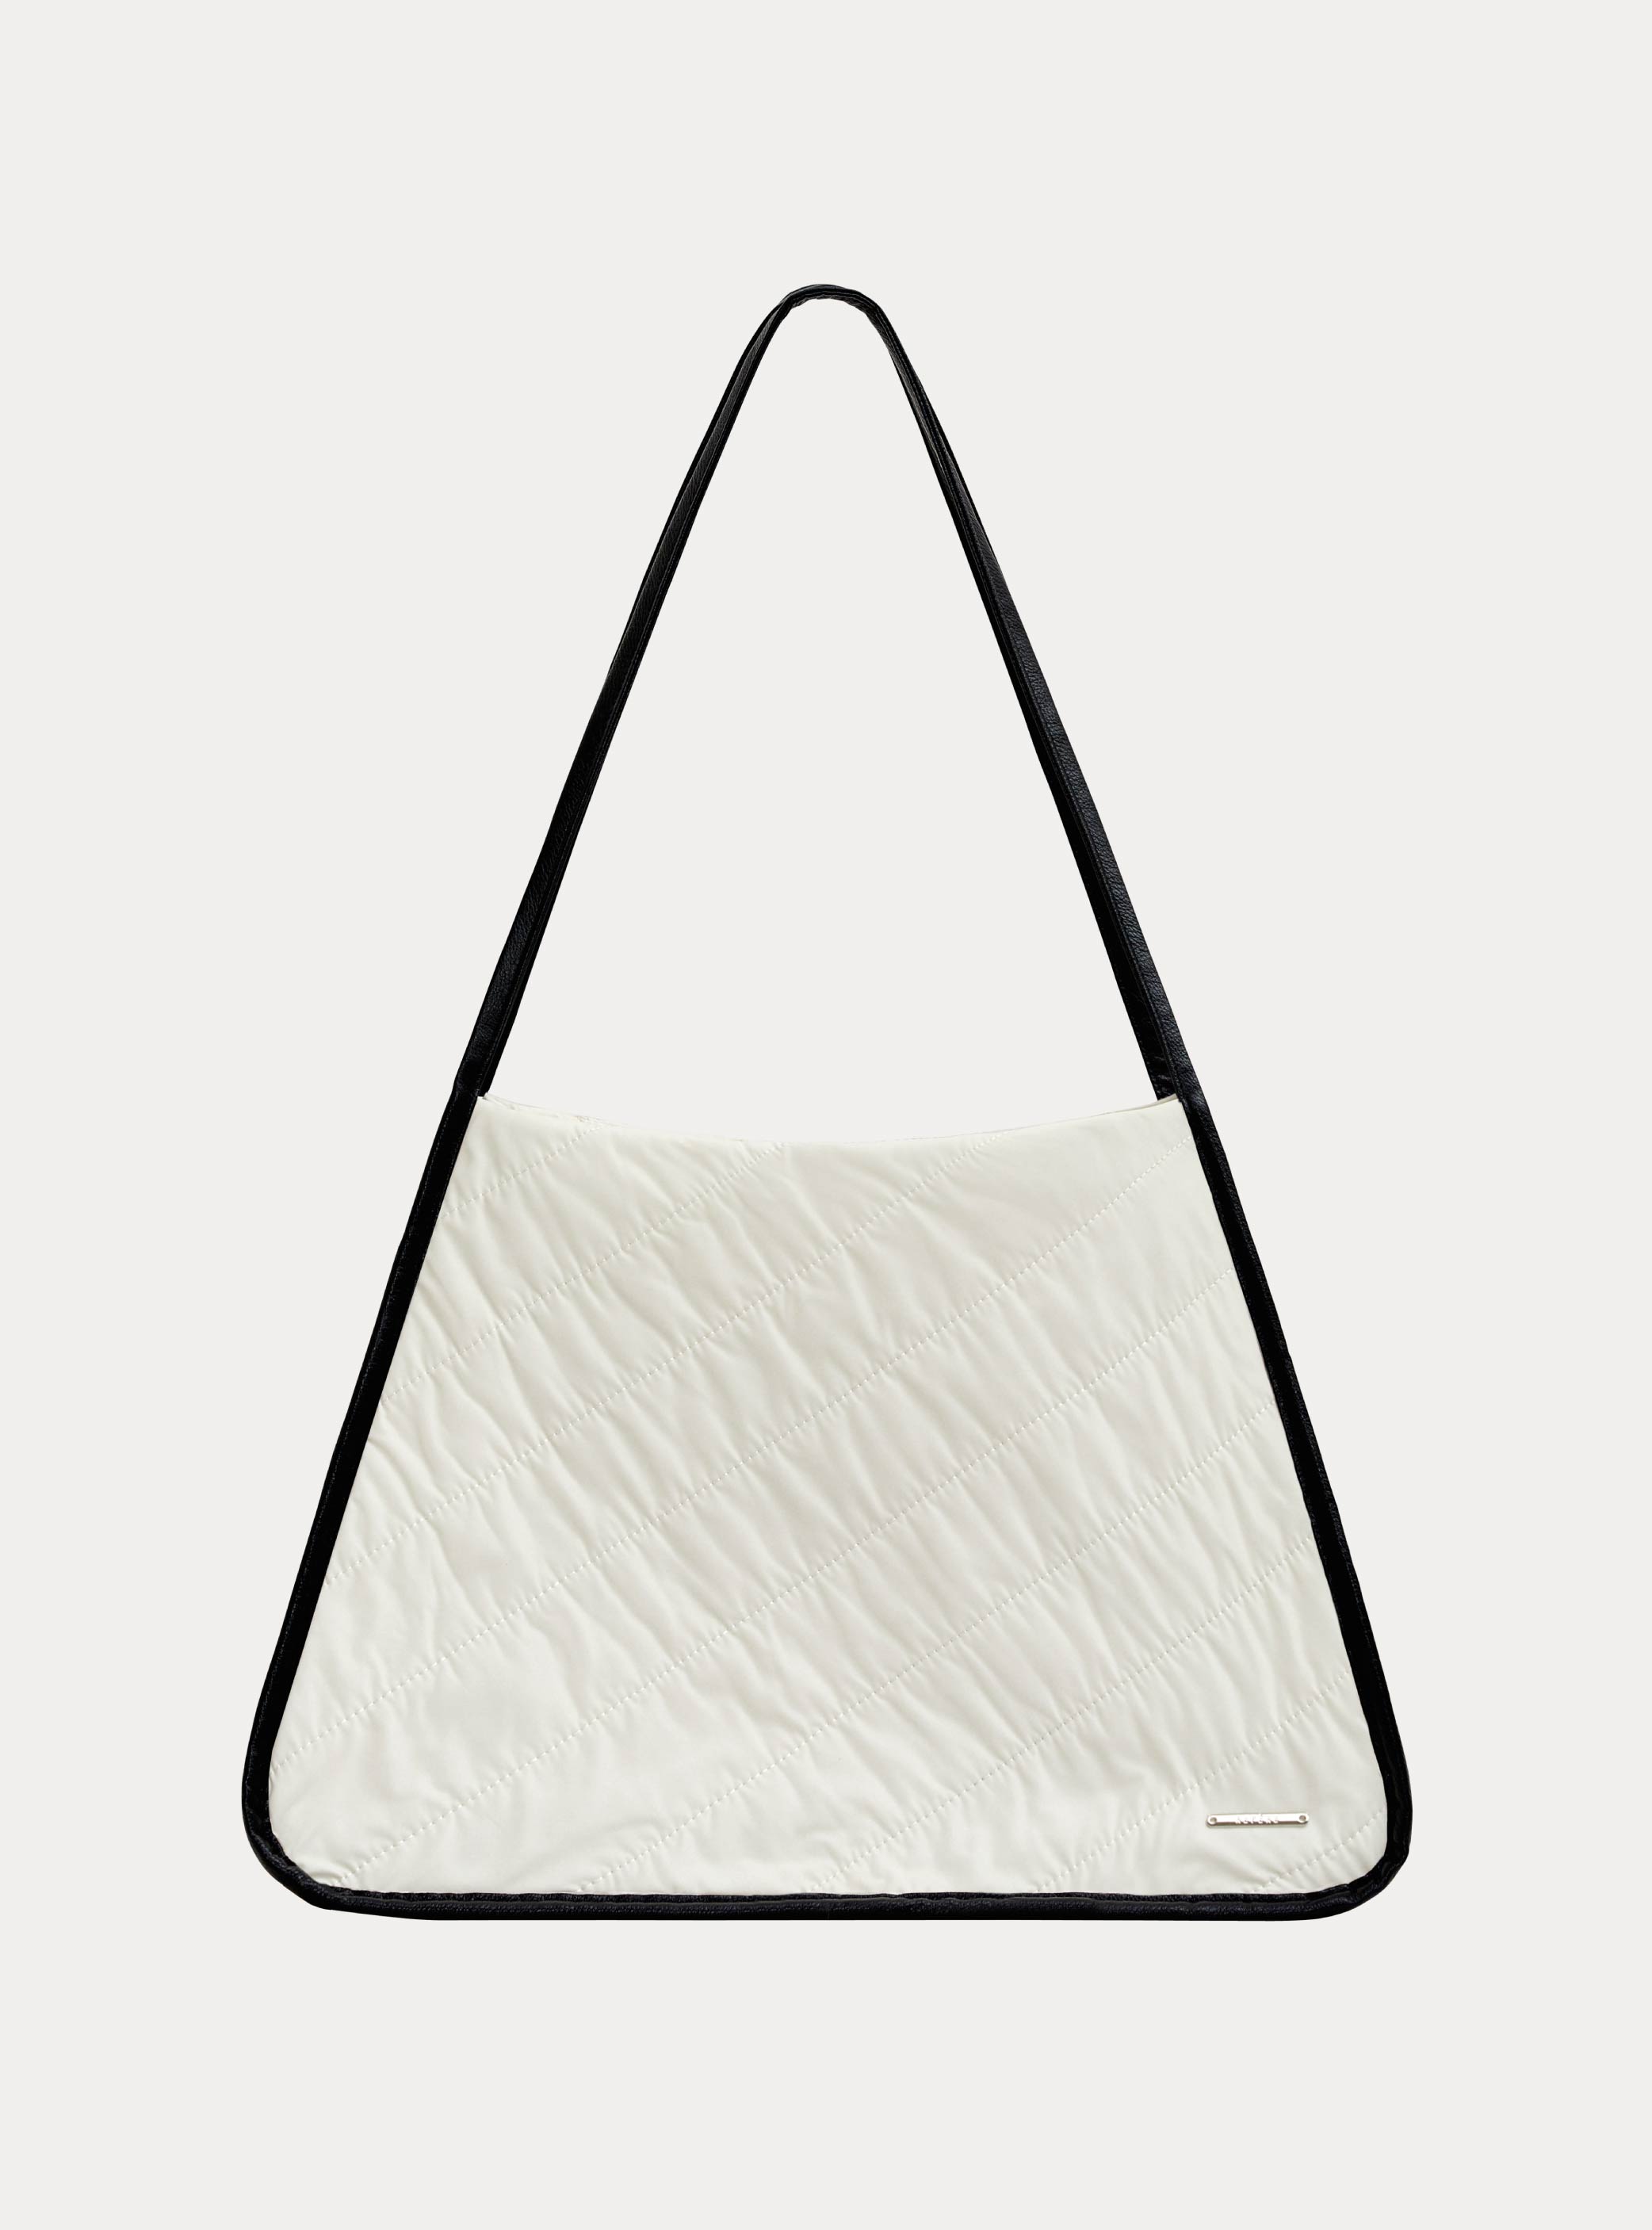 이그리트 퀼팅 토트백  Ygritte quilting tote bag (1color)